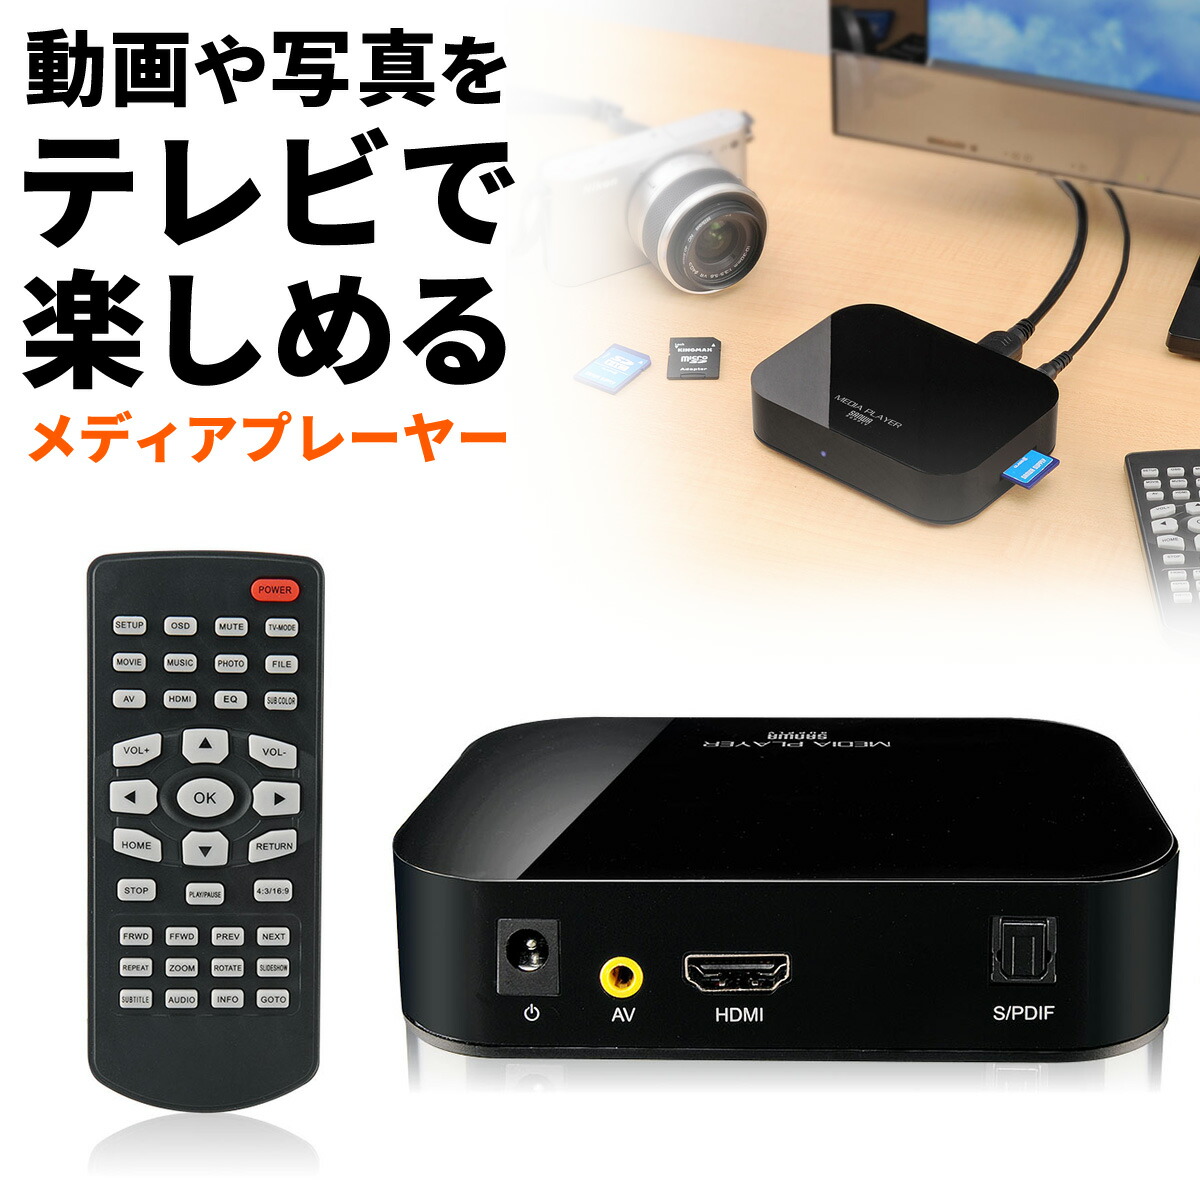 400-MEDI001 サンワダイレクト限定品 送料無料 メディアプレーヤー HDMI SDカード USBメモリ対応 動画 テレビ 数量は多 テレビ出力 コンパクト 全国どこでも送料無料 小型 写真